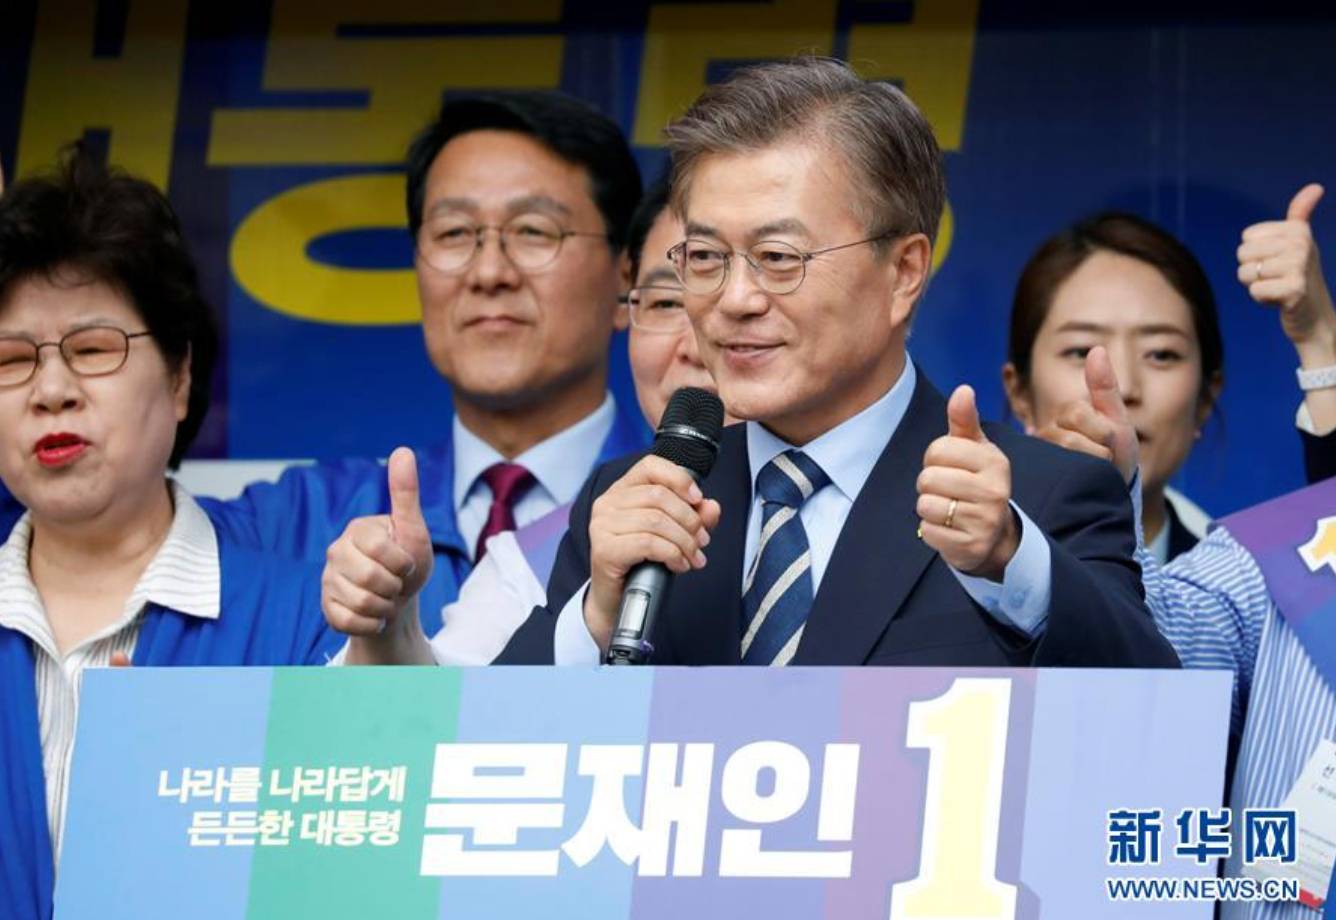 他赢了韩国大选 真能让朝鲜半岛局势出现转机？